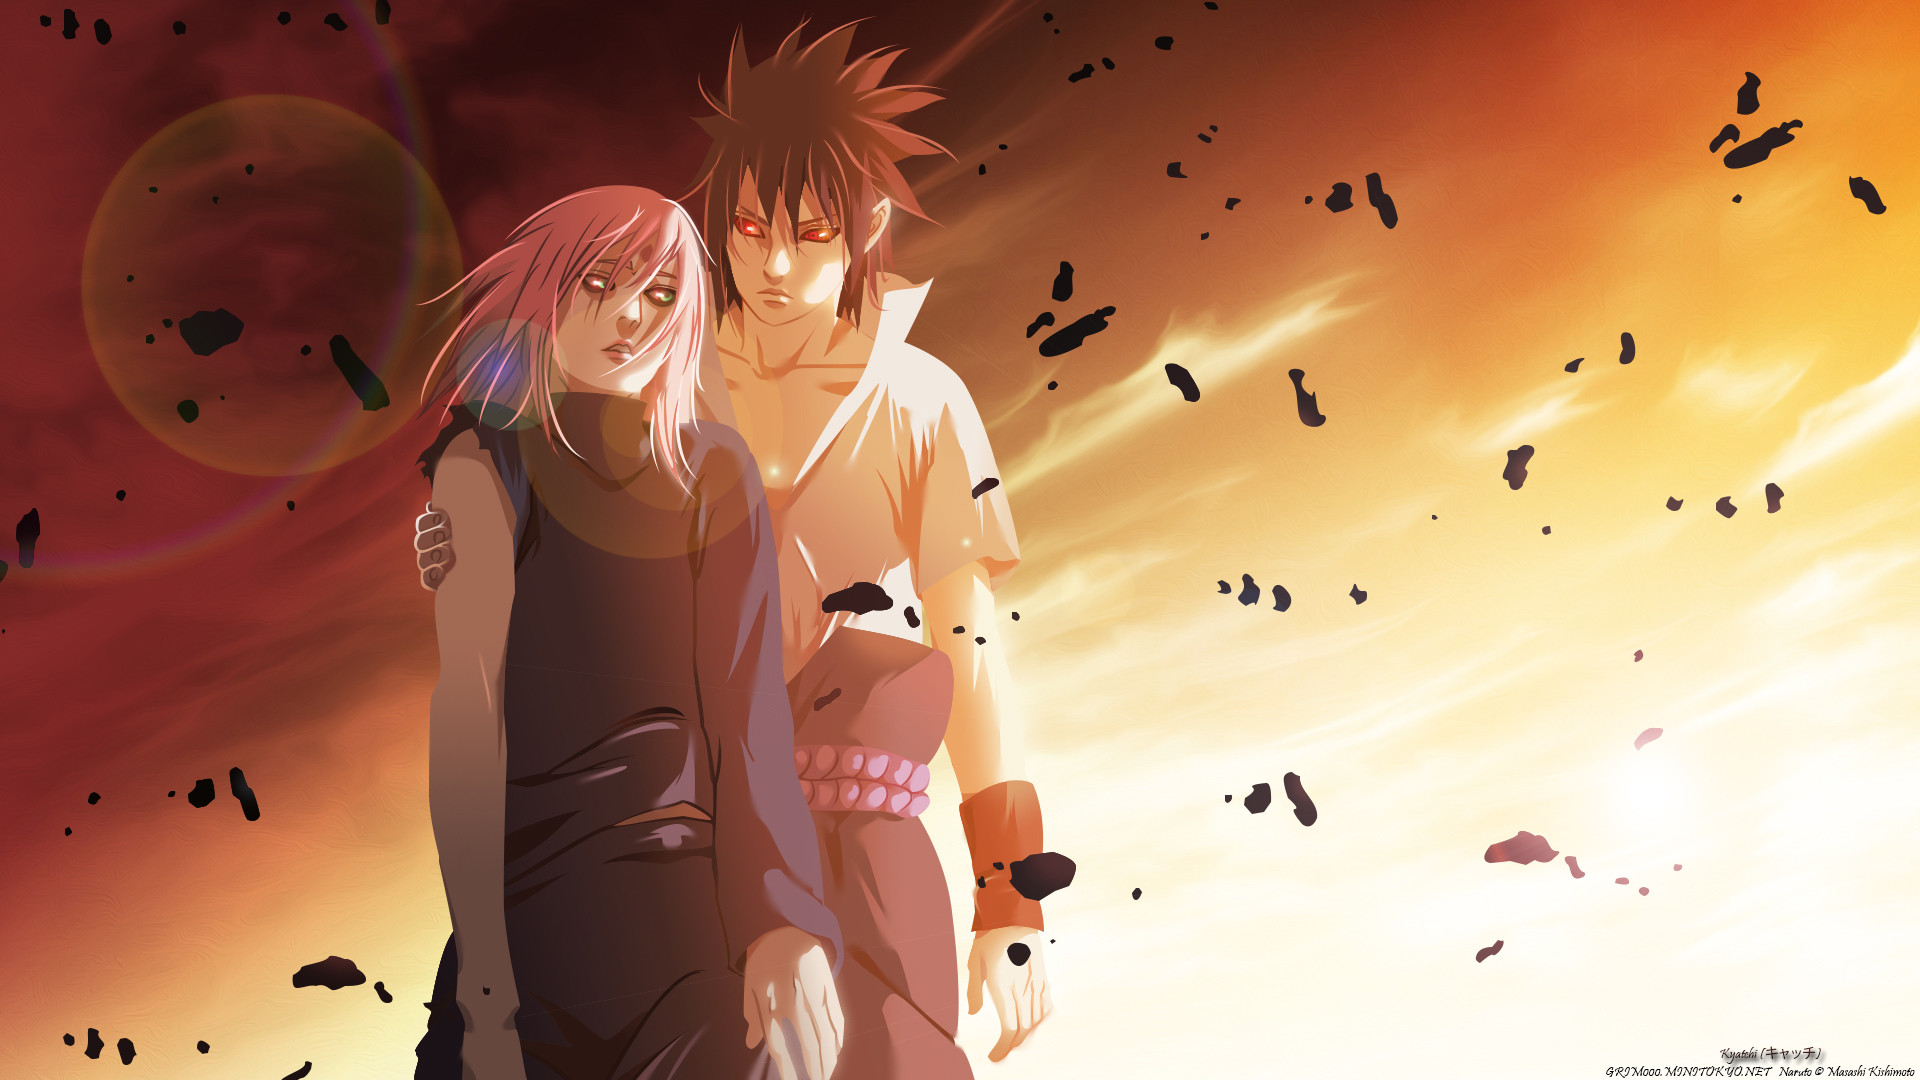 Anime, Naruto, Uchiha Sasuke, Haruno Sakura, Hd Wallpaper, - Sakura And Sasuke Background - HD Wallpaper 